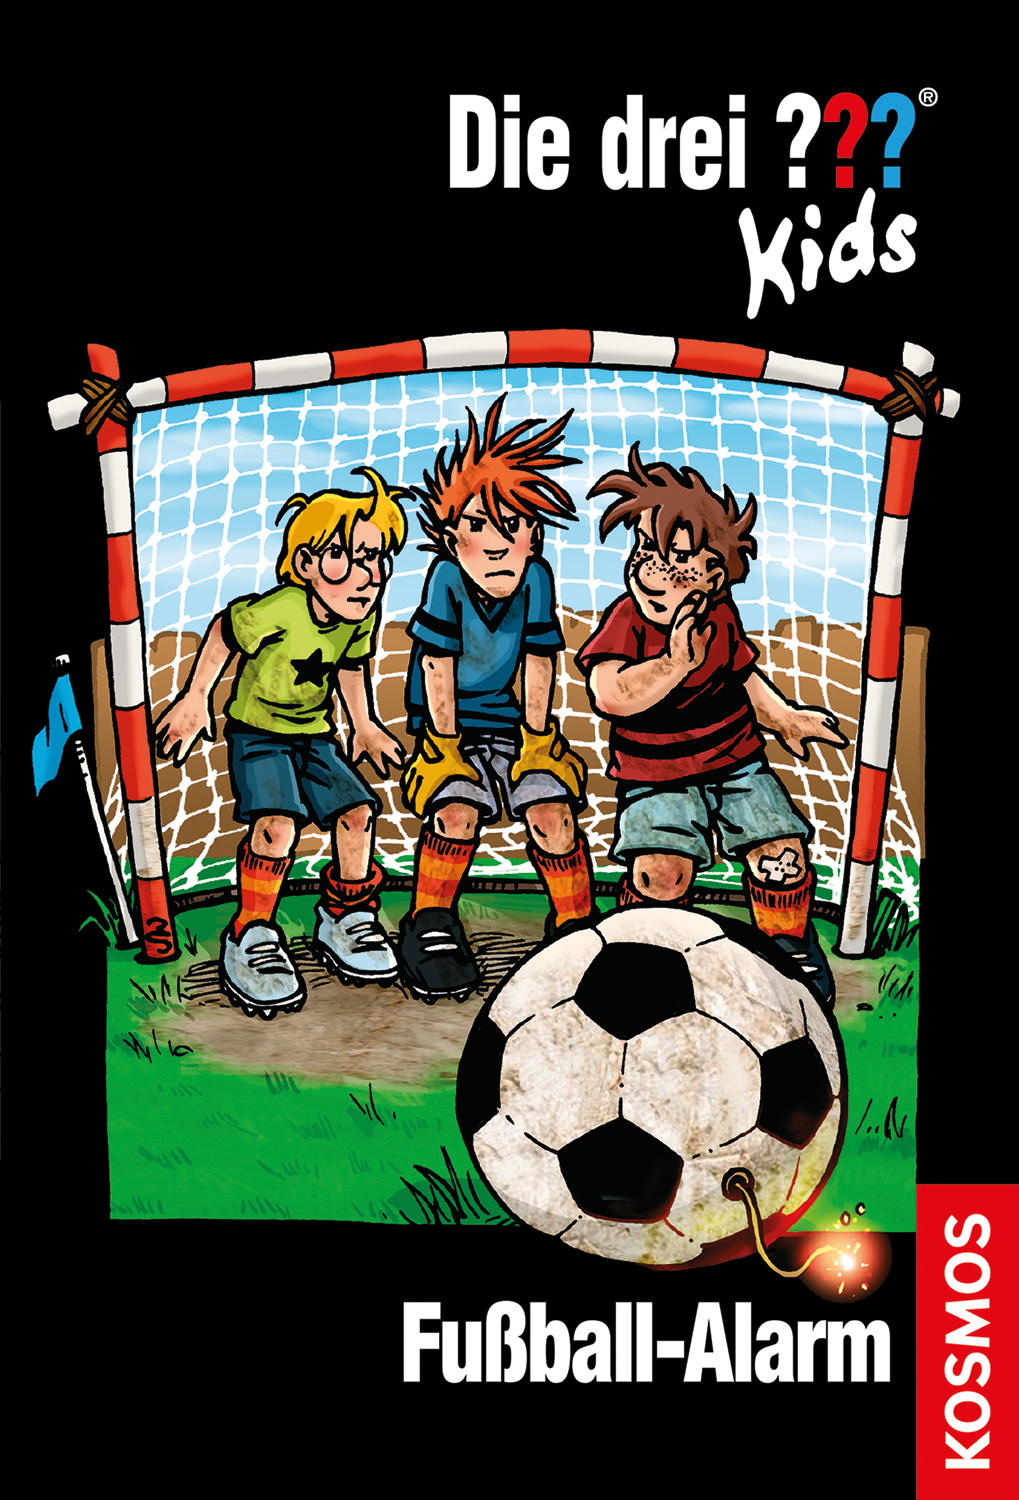 Die Drei ??? (Fragezeichen) Kids, Buch-Band 26: Die drei ??? Kids, 26, Fußball-Alarm